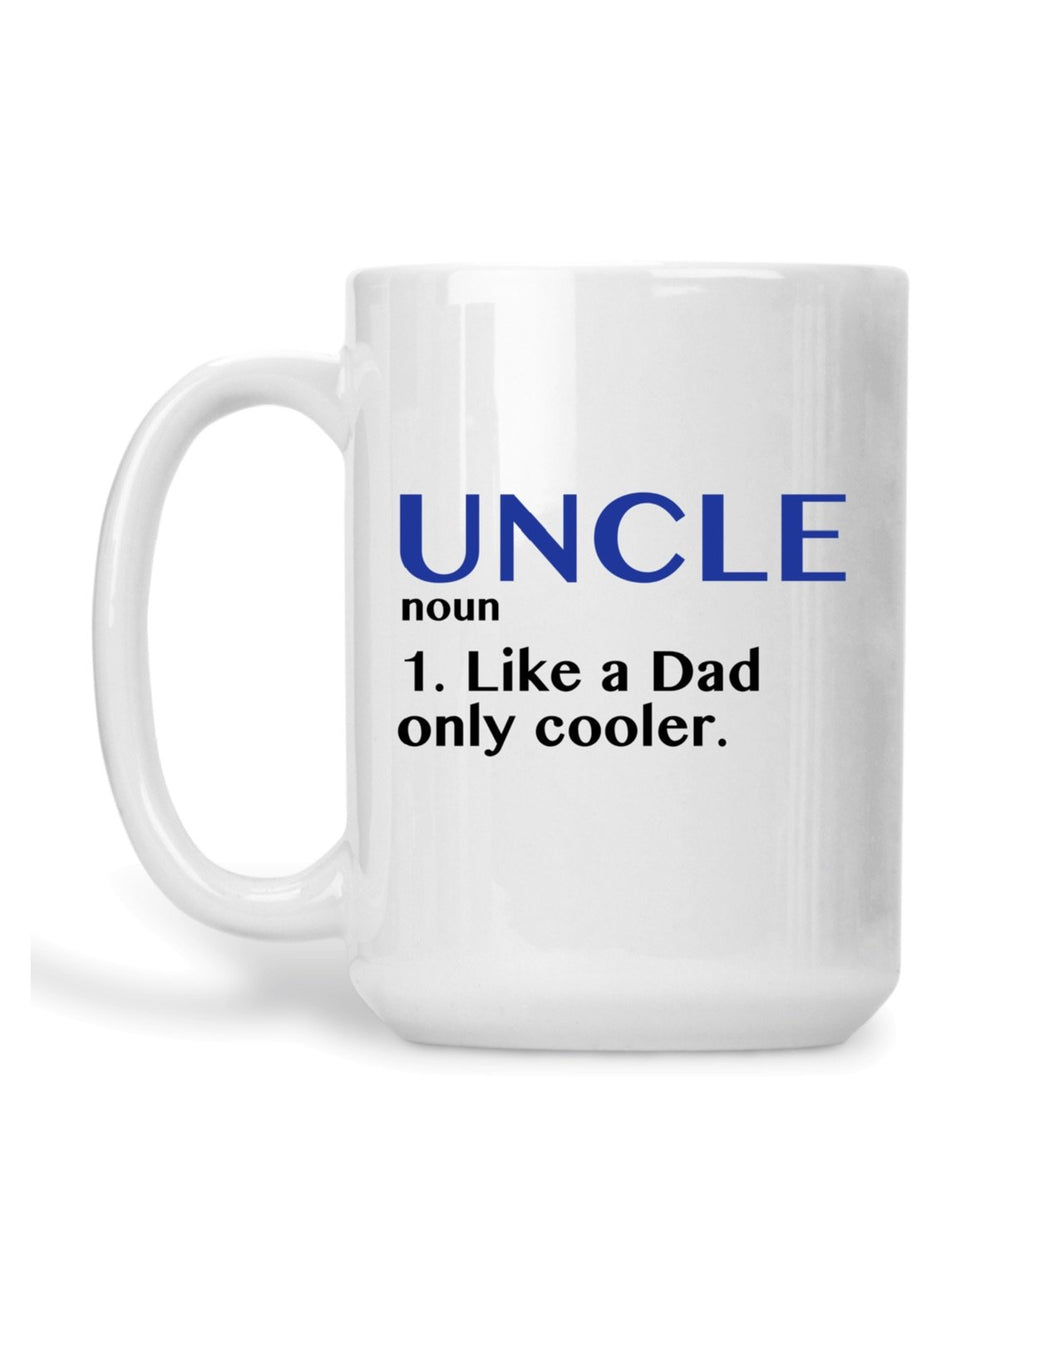 Uncle - definition